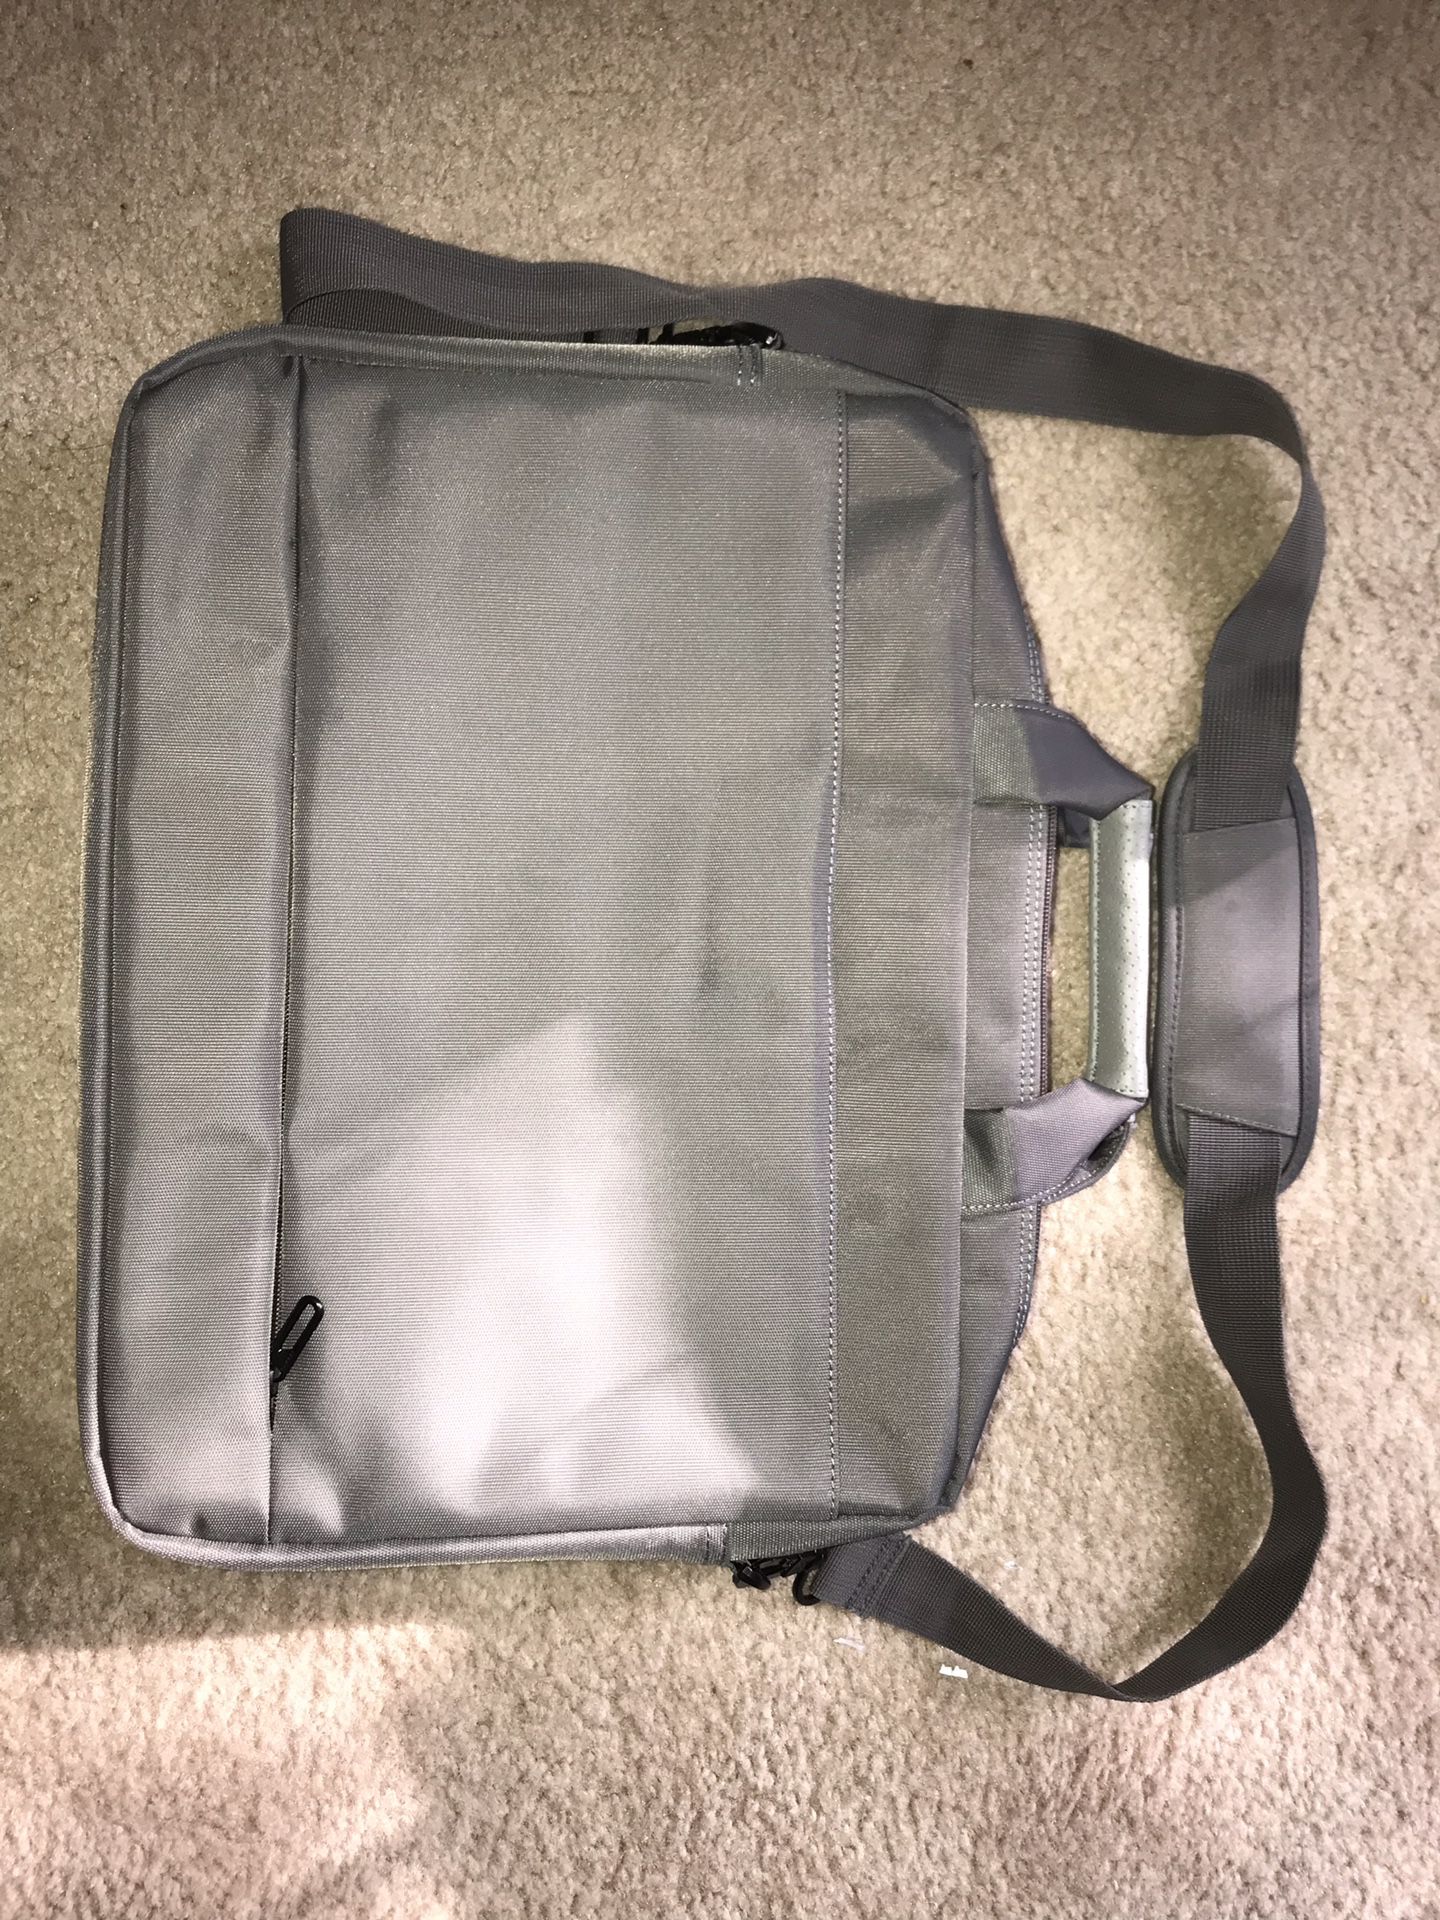 Laptop bag - excellent quality